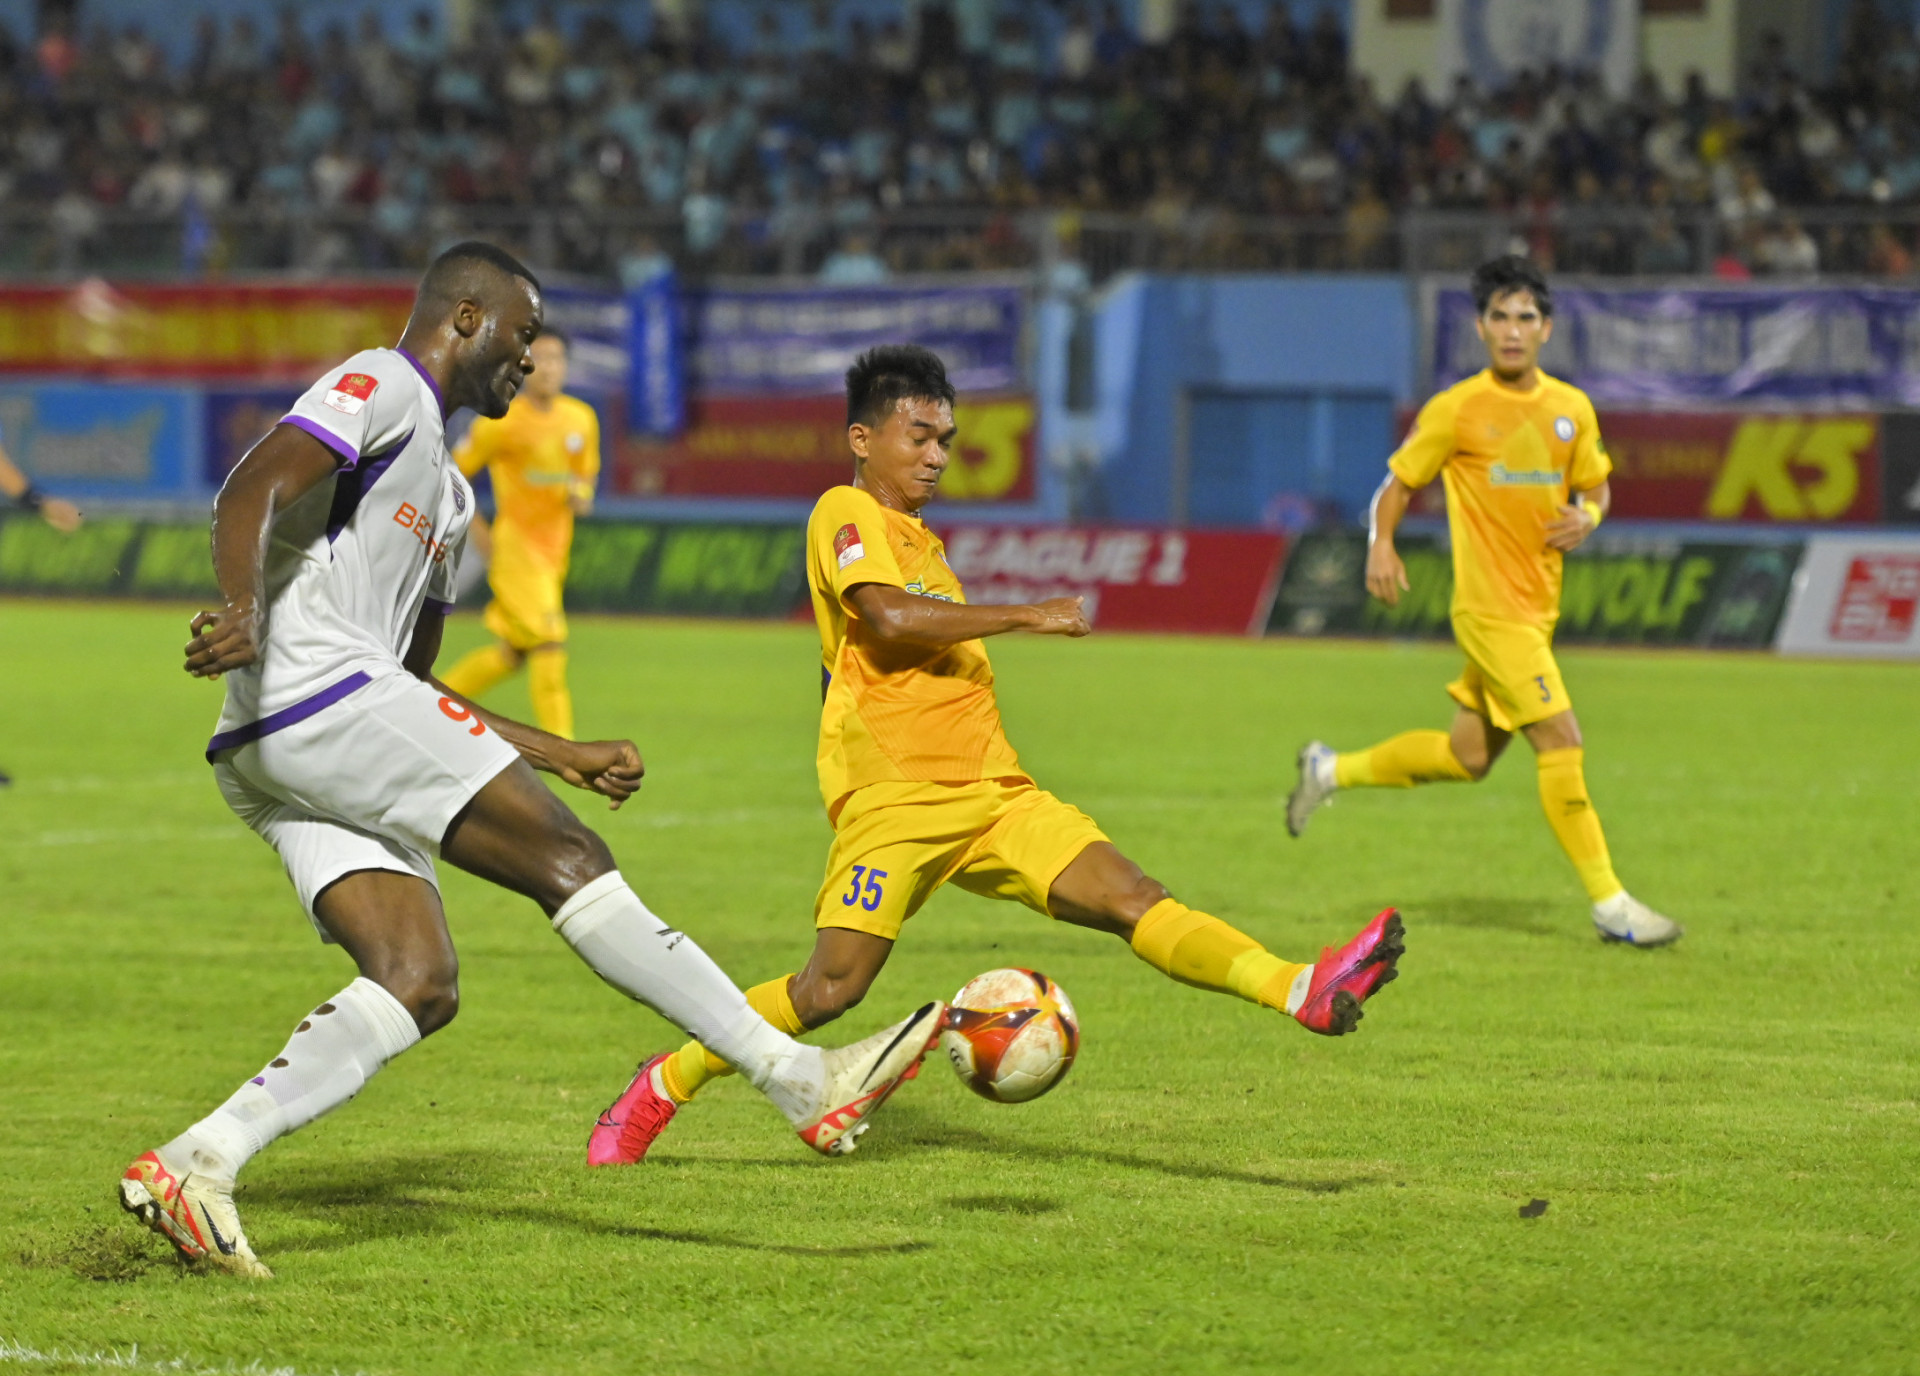 Trận đấu giữa Becamex Bình Dương và Khánh Hòa giai đoạn lượt đi mùa giải năm nay.